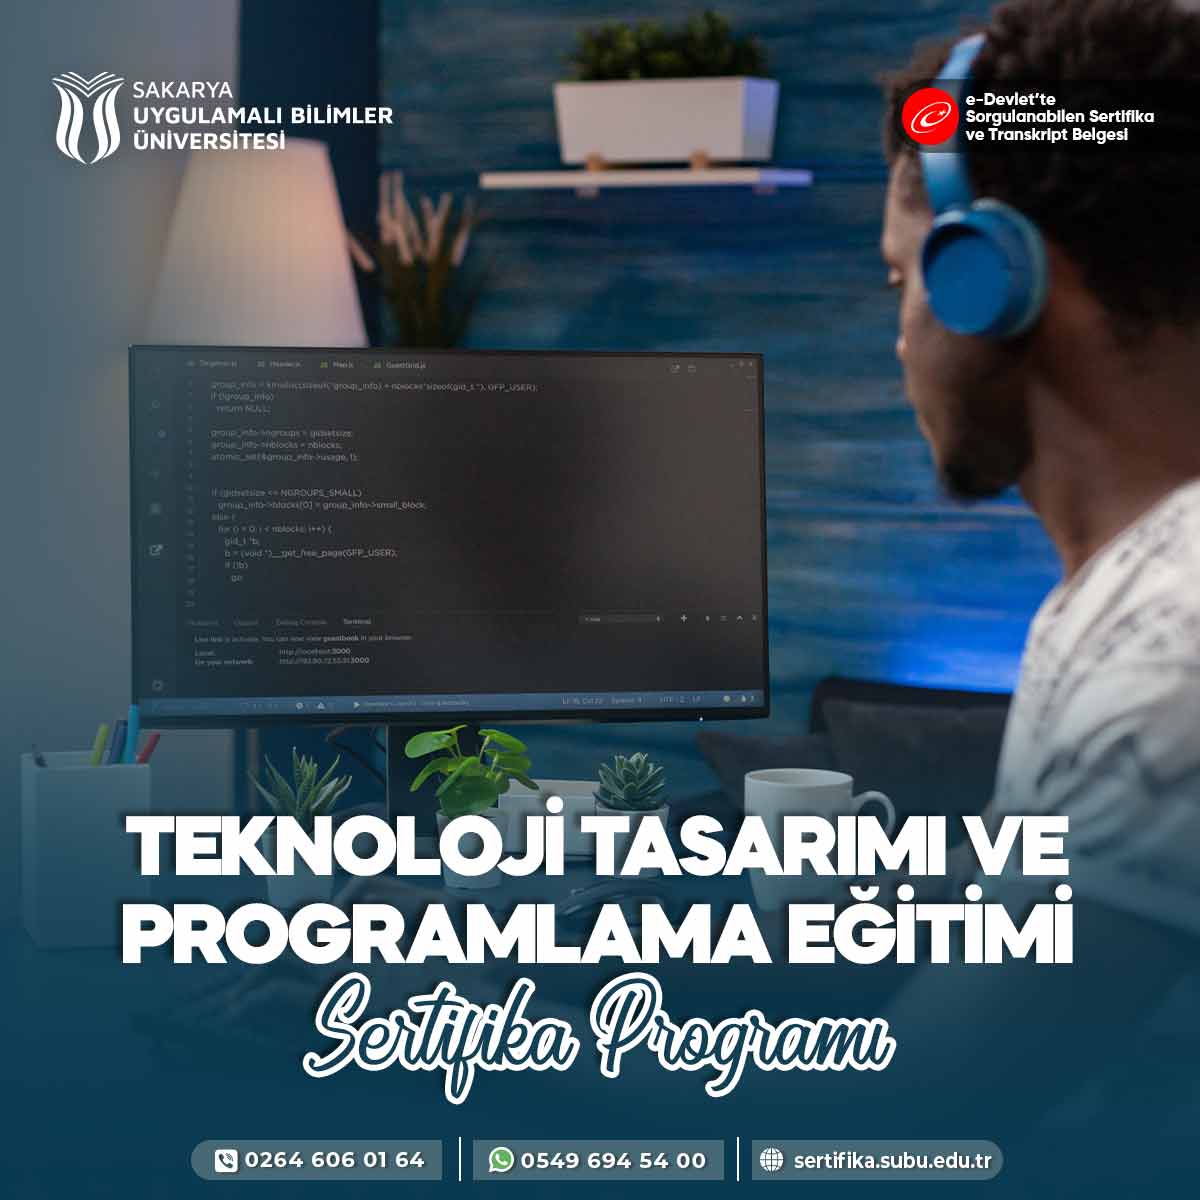 Teknoloji Tasarımı ve Programlama Eğitimi Sertifika Programı